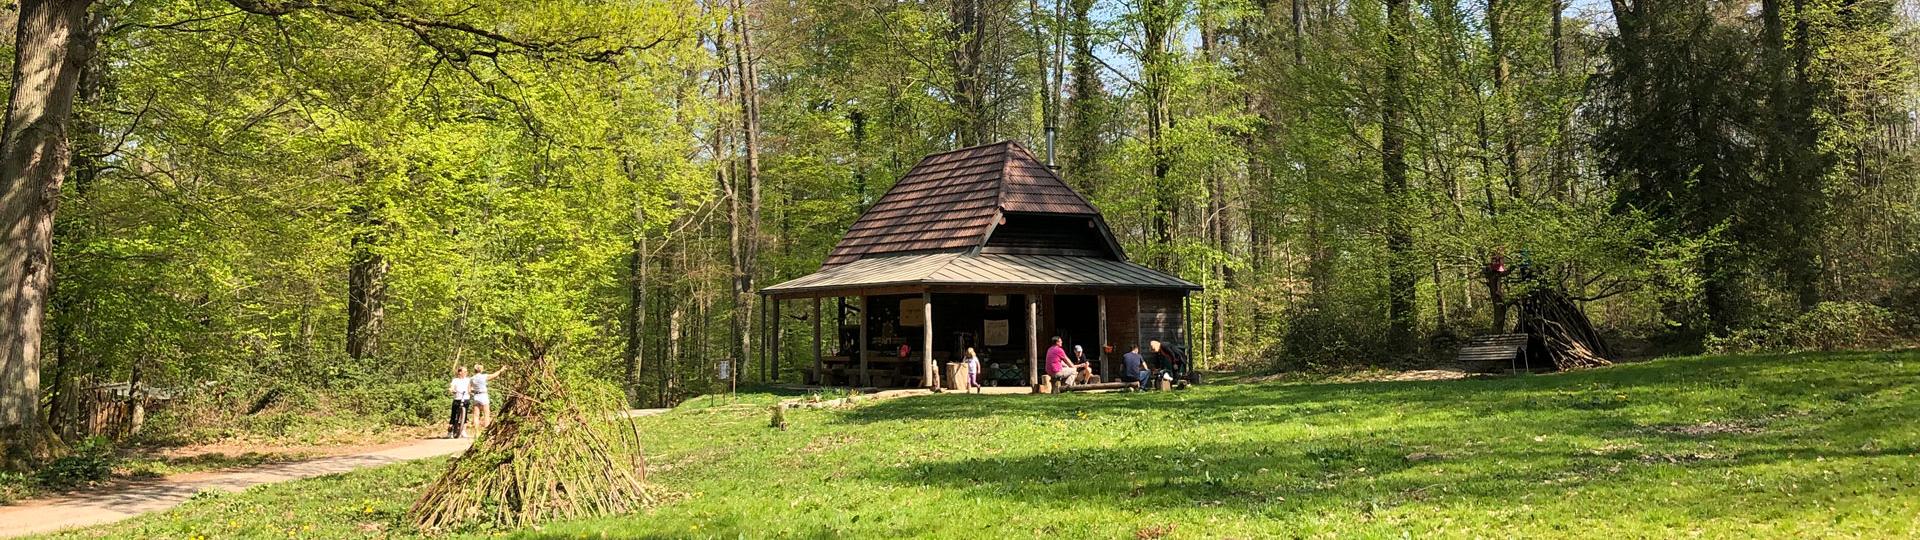 Sanierung und Erweiterung der Hirschackerhütte, Umbau zum Waldkindergarten